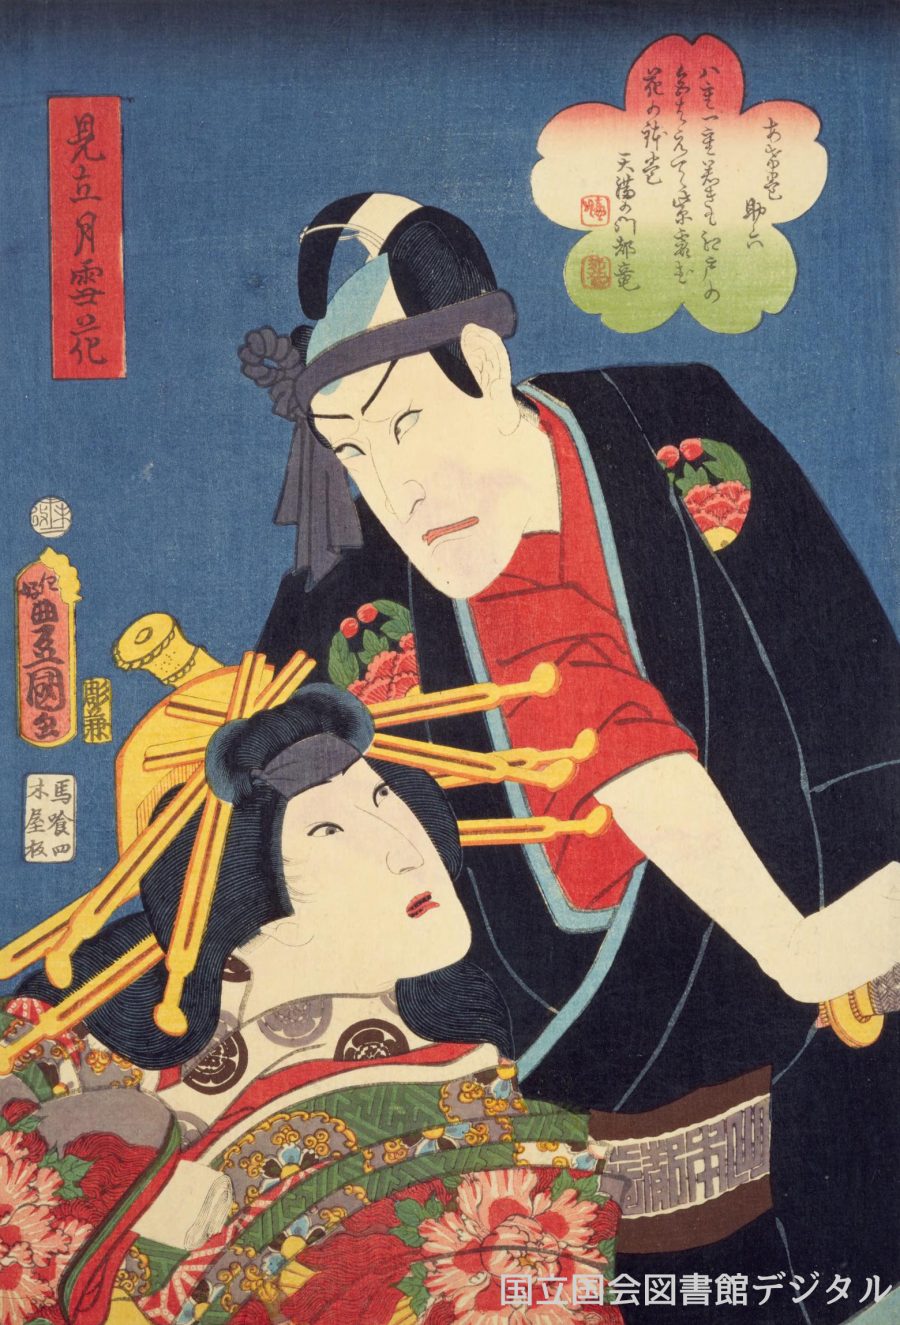 歌舞 伎 イラスト 無料かっこいい 歌っ てる 人 イラスト イラスト画像集